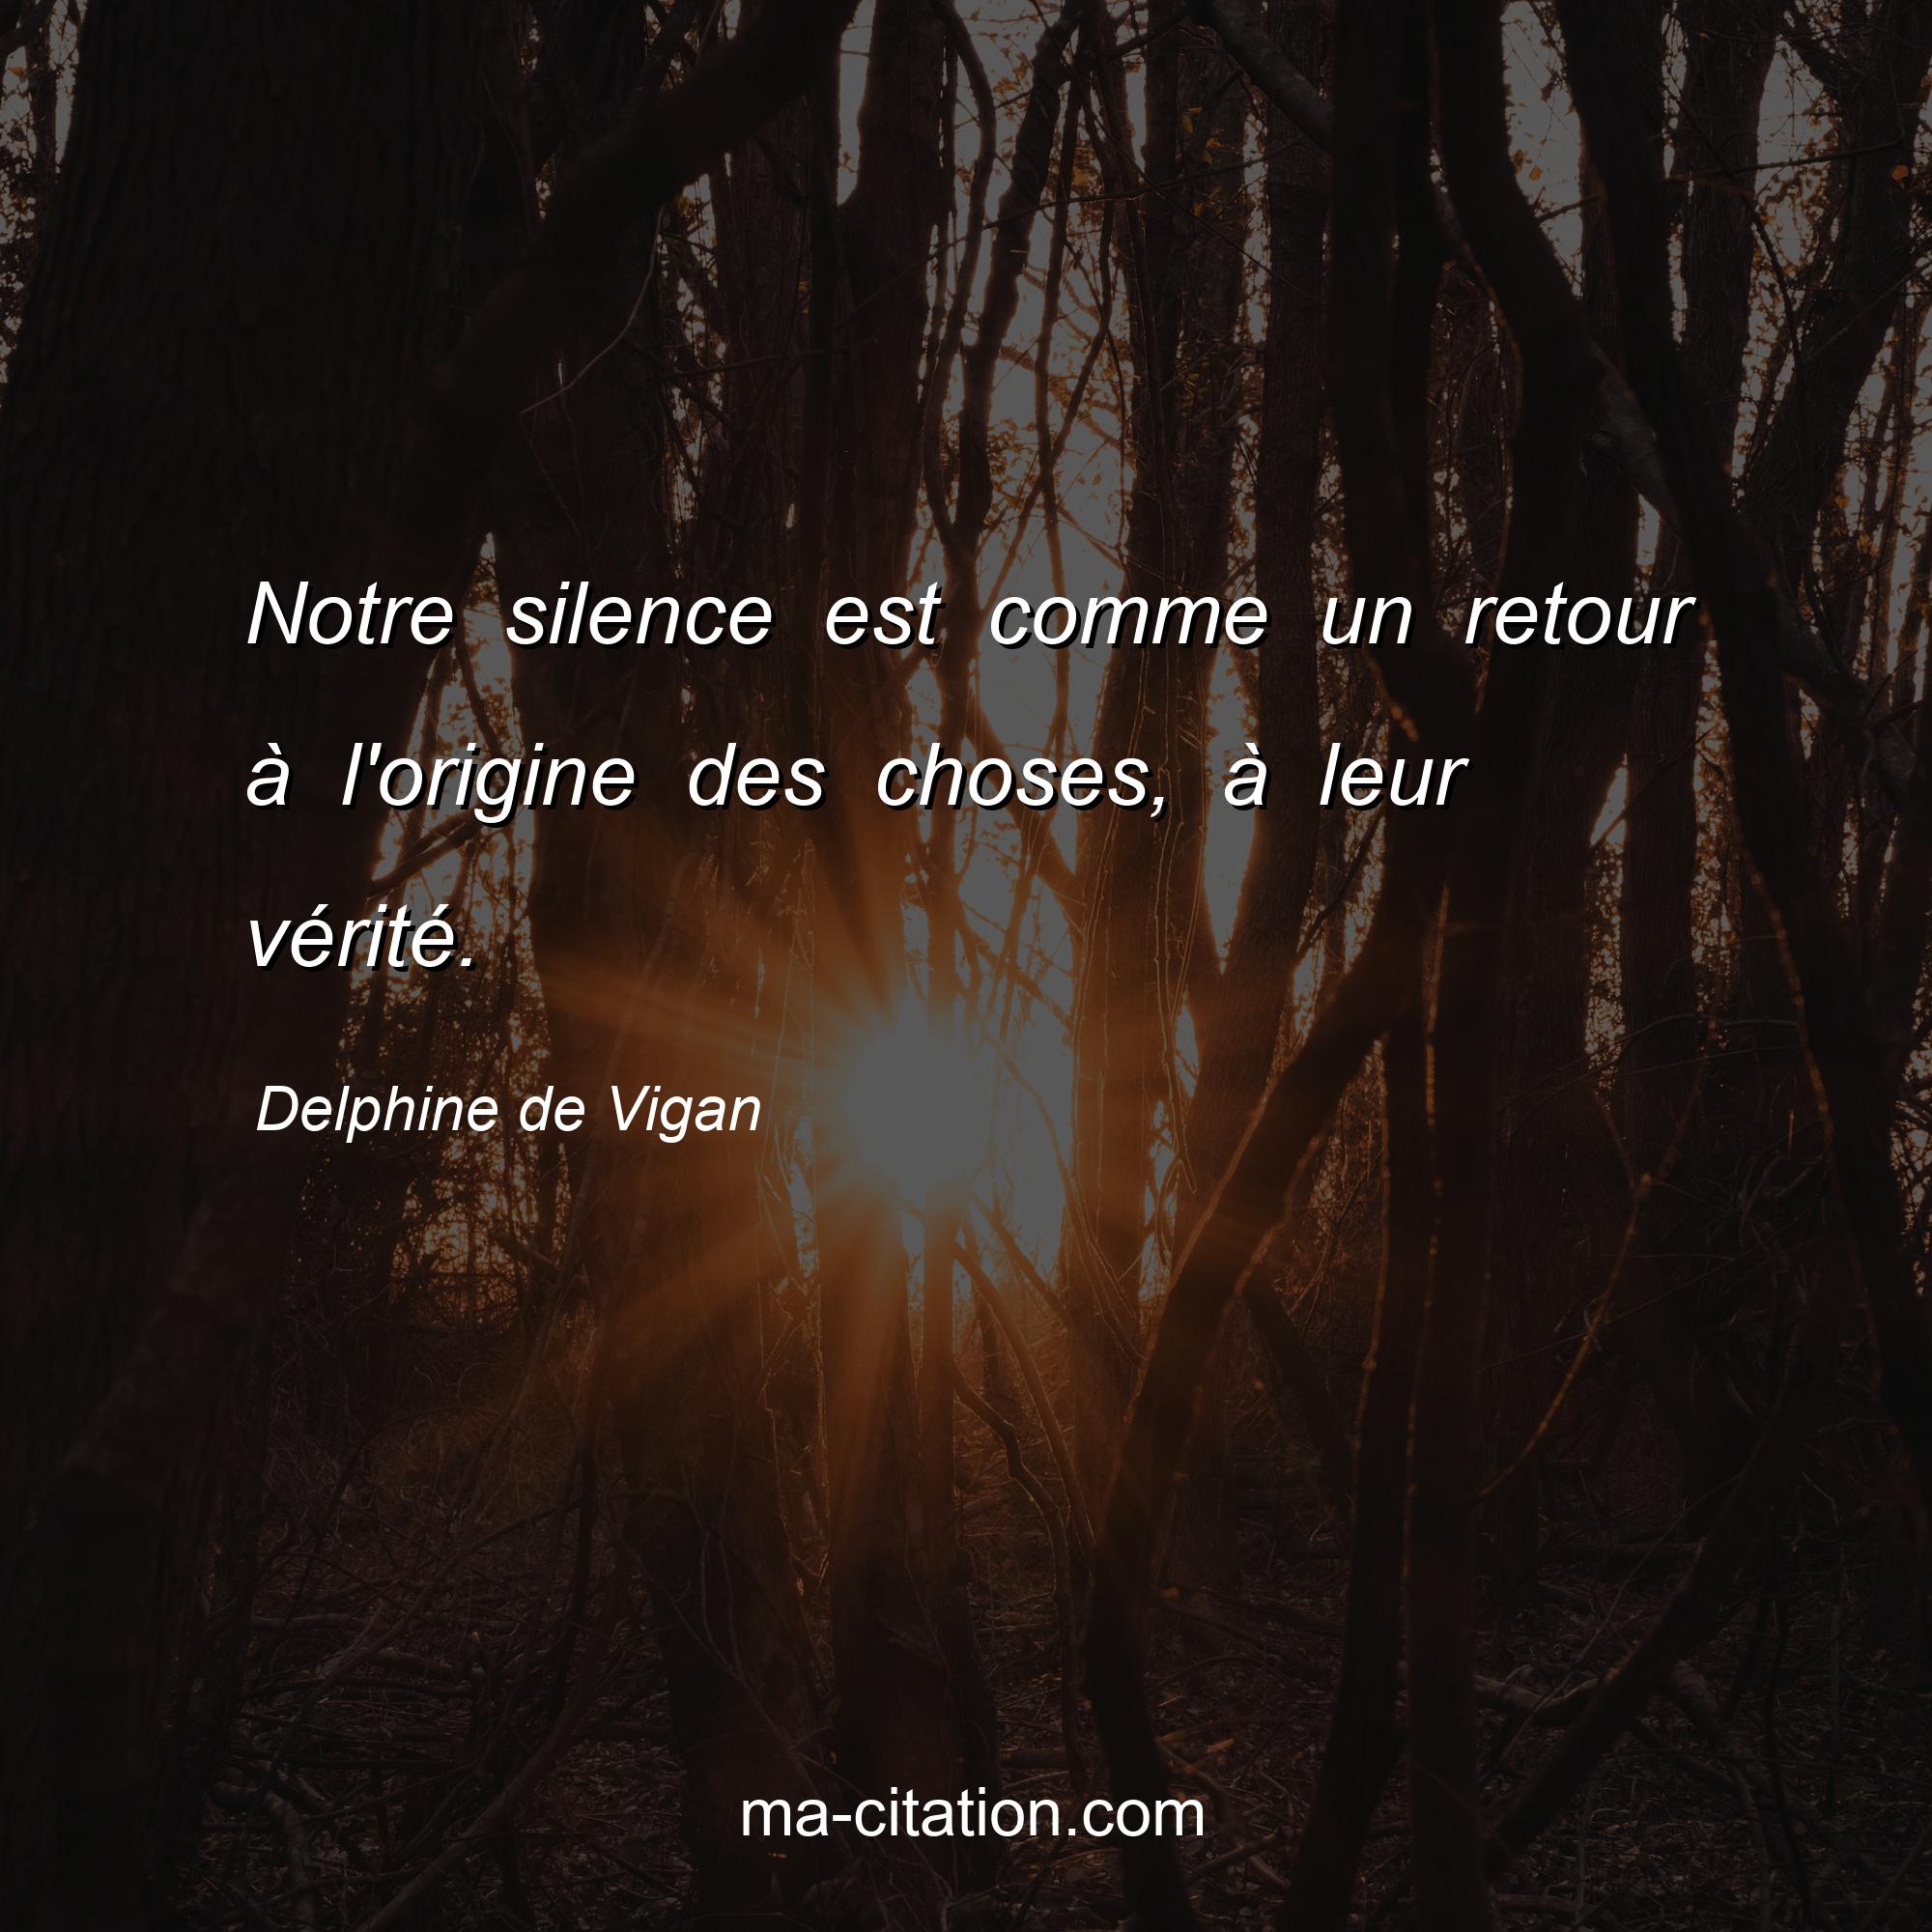 Delphine de Vigan : Notre silence est comme un retour à l'origine des choses, à leur vérité.